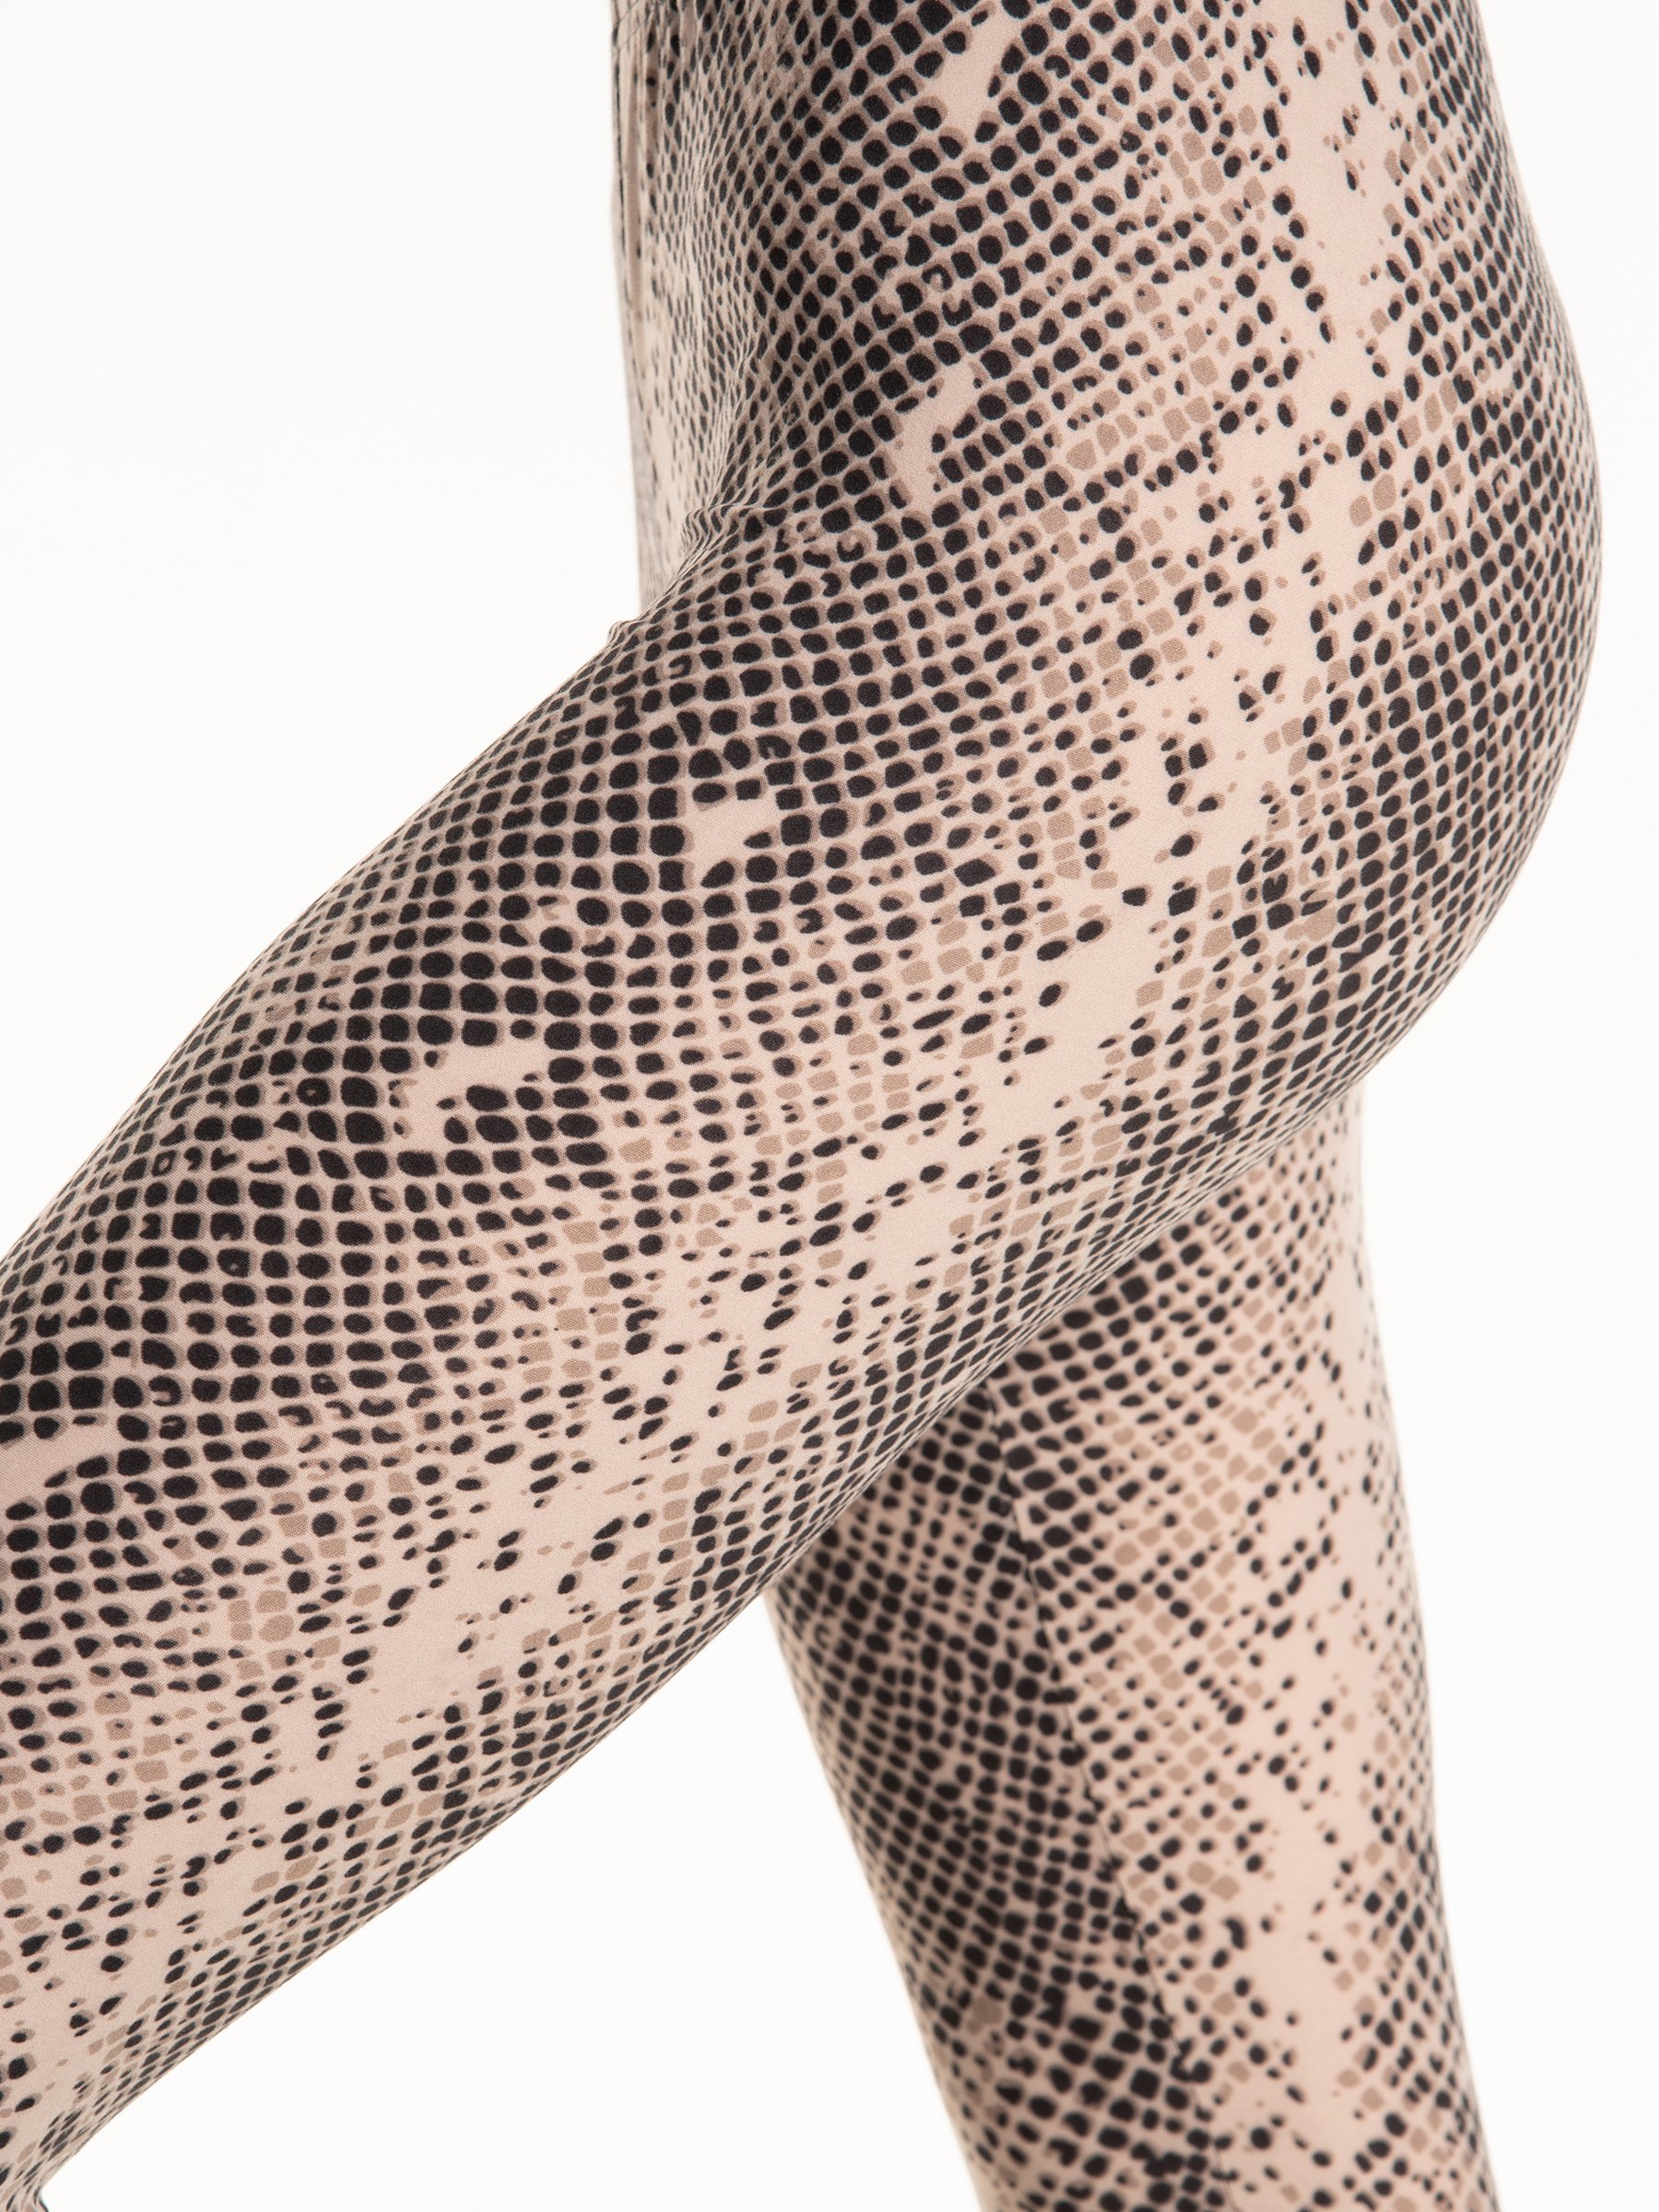 Snake skin print leggings